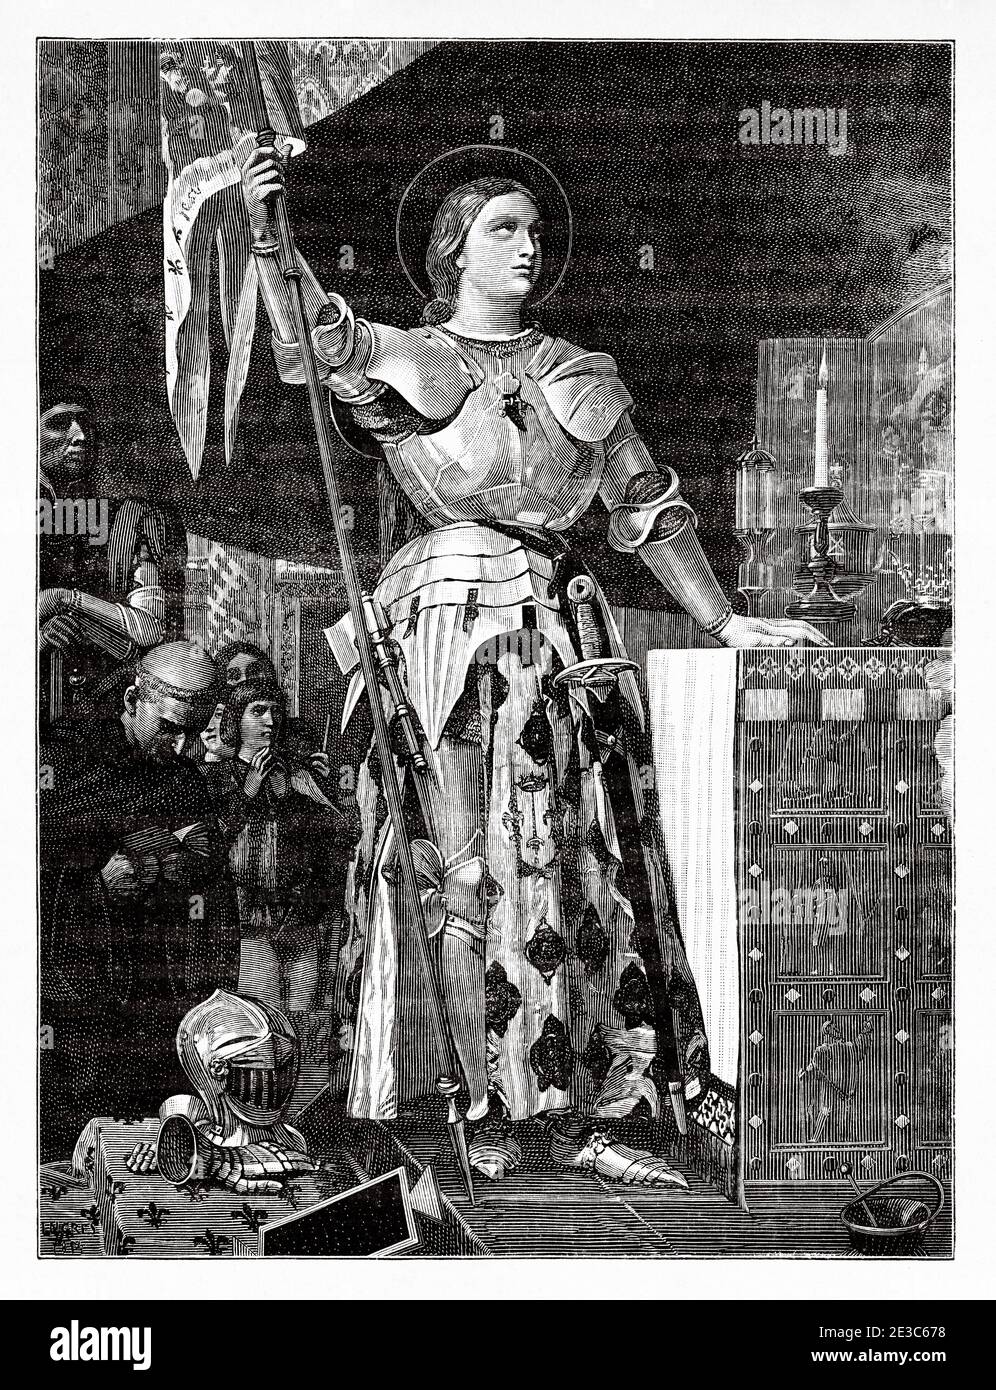 Porträt der Jeanne d'Arc bei der Krönung Karls VII. In der Kathedrale von Reims. Jeanne d'Arc (1412-1431) hat den Spitznamen die Jungfrau von Orleans. La Pucelle d’Orléans. Heldin von Frankreich für ihre Rolle während der Lancaster Phase des Hundertjährigen Krieges, und wurde als katholische heilige heilig gesprochen. Verbrannt auf dem Scheiterhaufen am 30. Mai 143. Symbol der Katholischen Liga. Nationales Symbol von Frankreich durch Beschluss von Napoleon Bonaparte.Seliggesprochen im Jahr 1909 und heilig gesprochen im Jahr 1920. Frankreich. Les Français Illustres von Gustave Demoulin 1897 Stockfoto